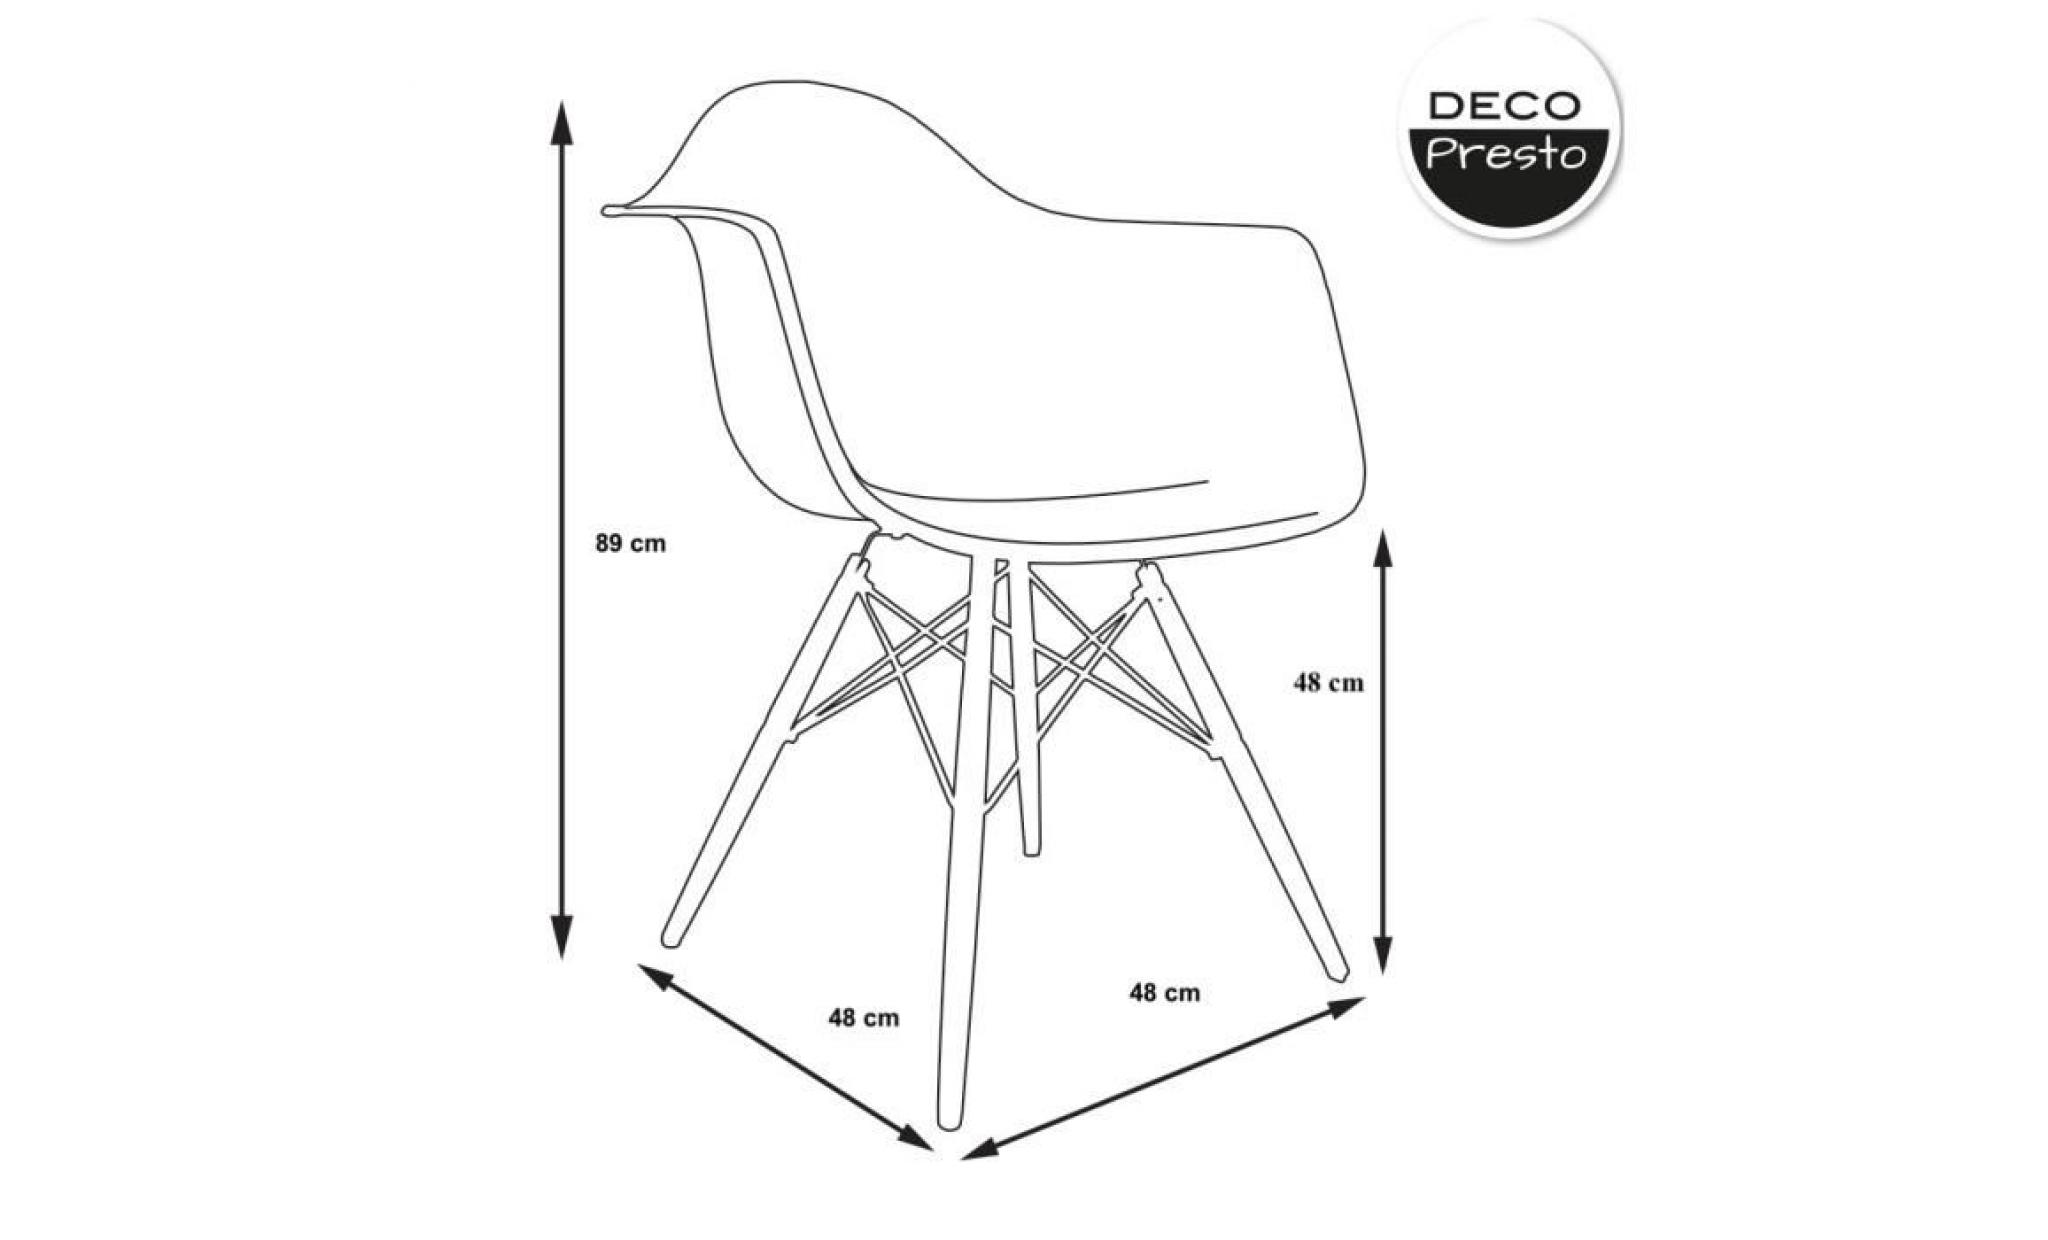 1 x fauteuil design scandinave haut. 48 cm parme lilac pieds: bois naturel decopresto dp dawl48 pa 1 pas cher